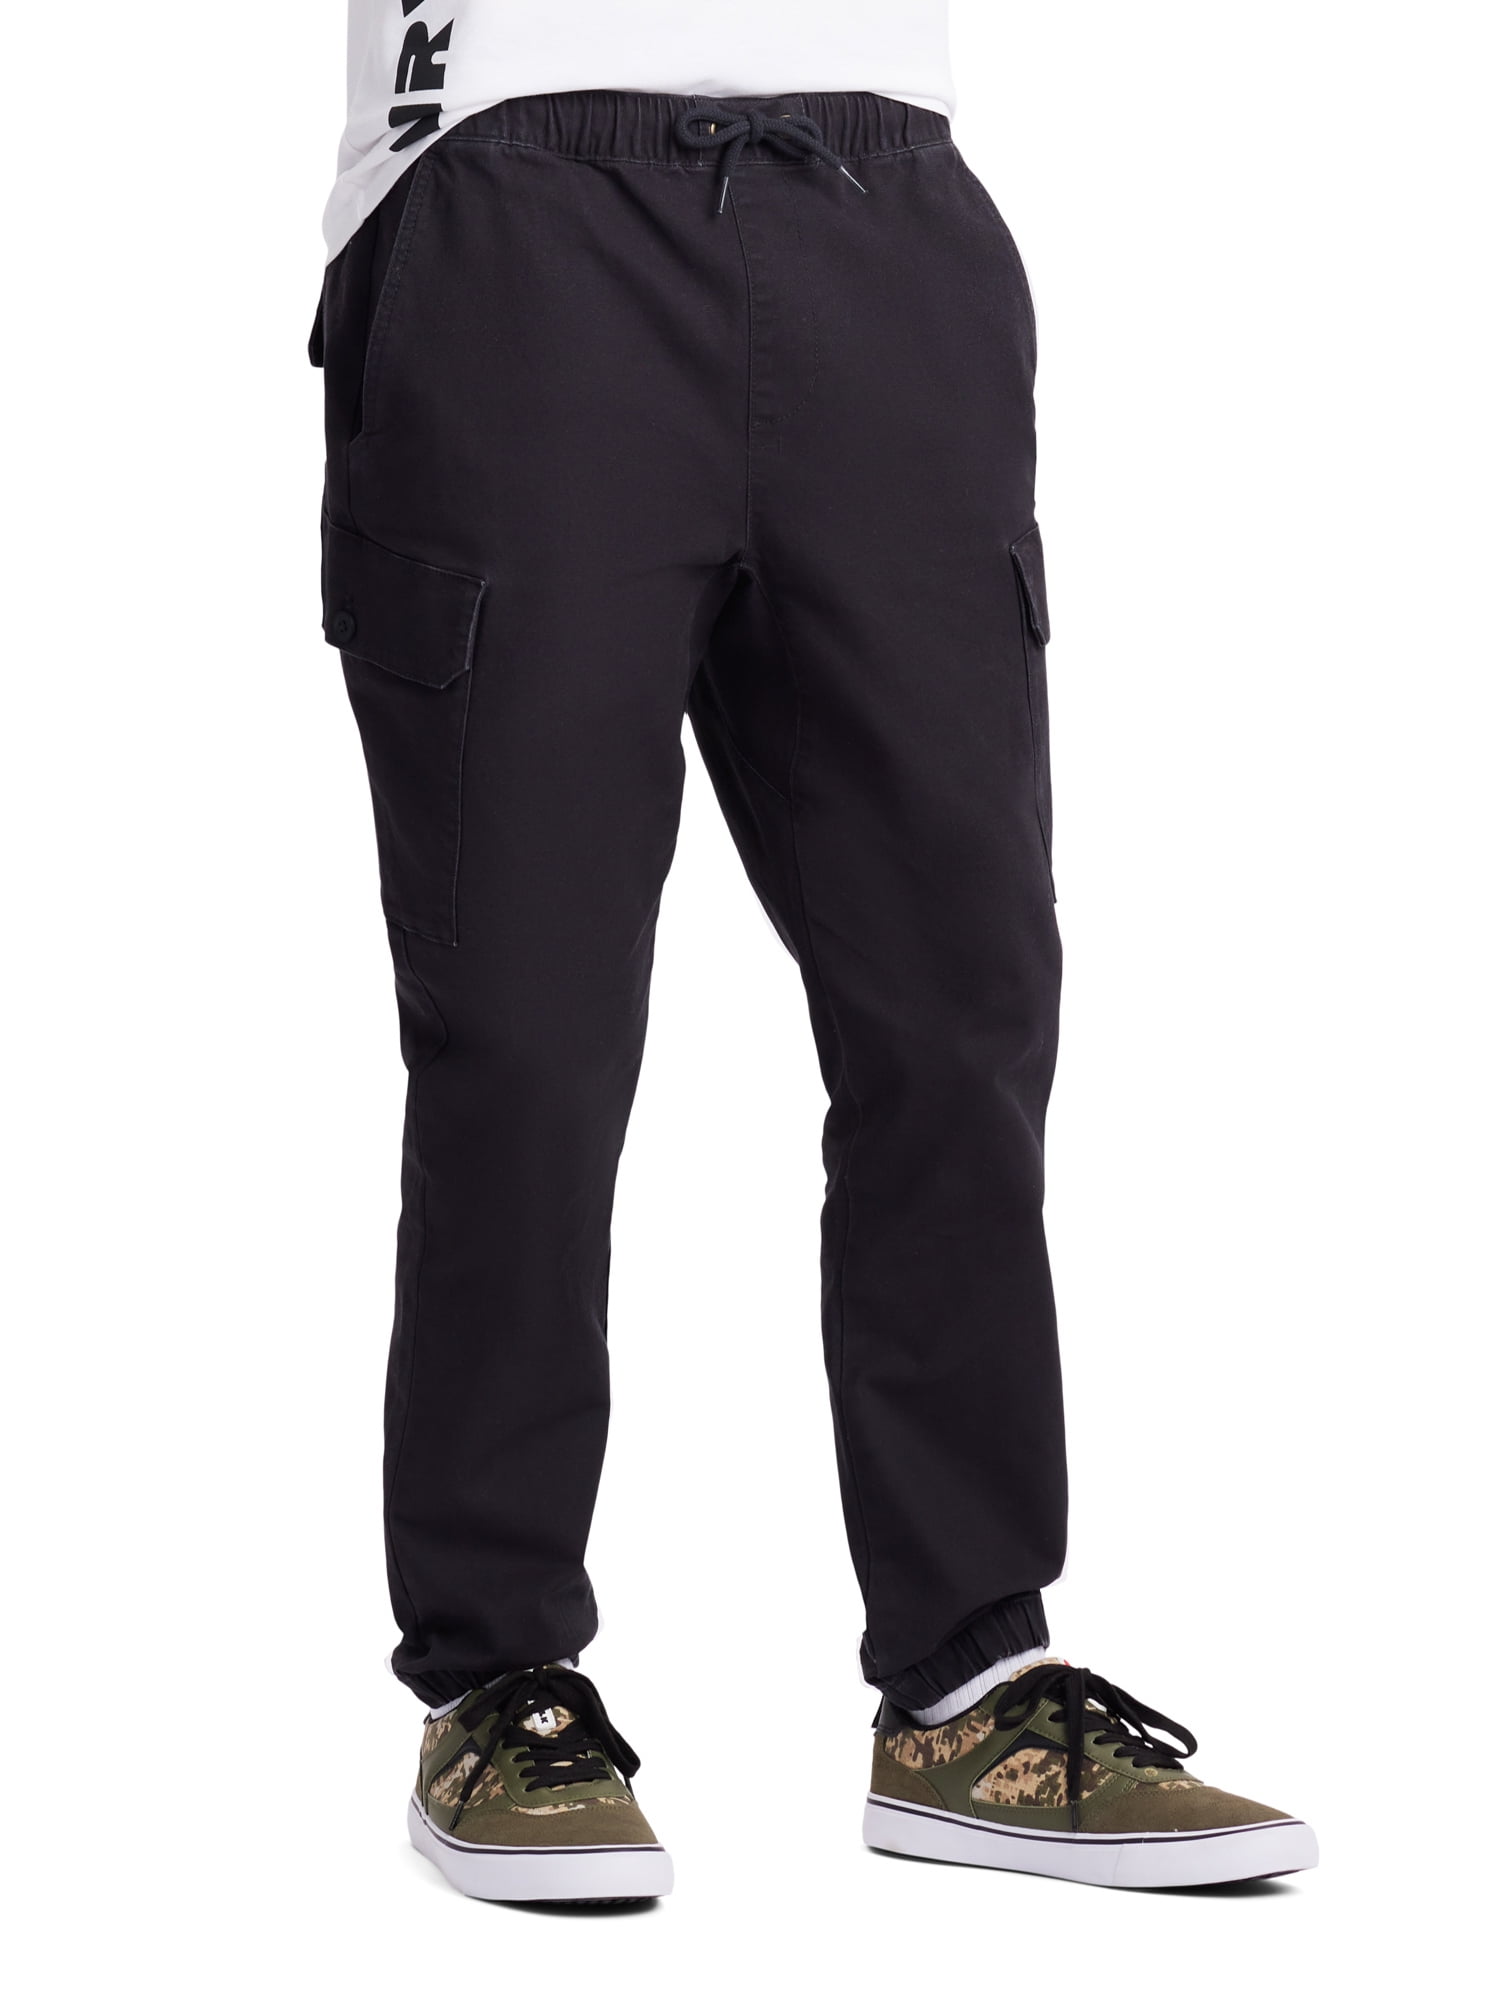 Mens Pants Designer Mens Pants Jagger Sport Classic Print Reflective  Sweatpants Cotton Casual Couple Plush Hip Hop Trousers Size S XL From  Qiu990916, $25.99 | DHgate.Com